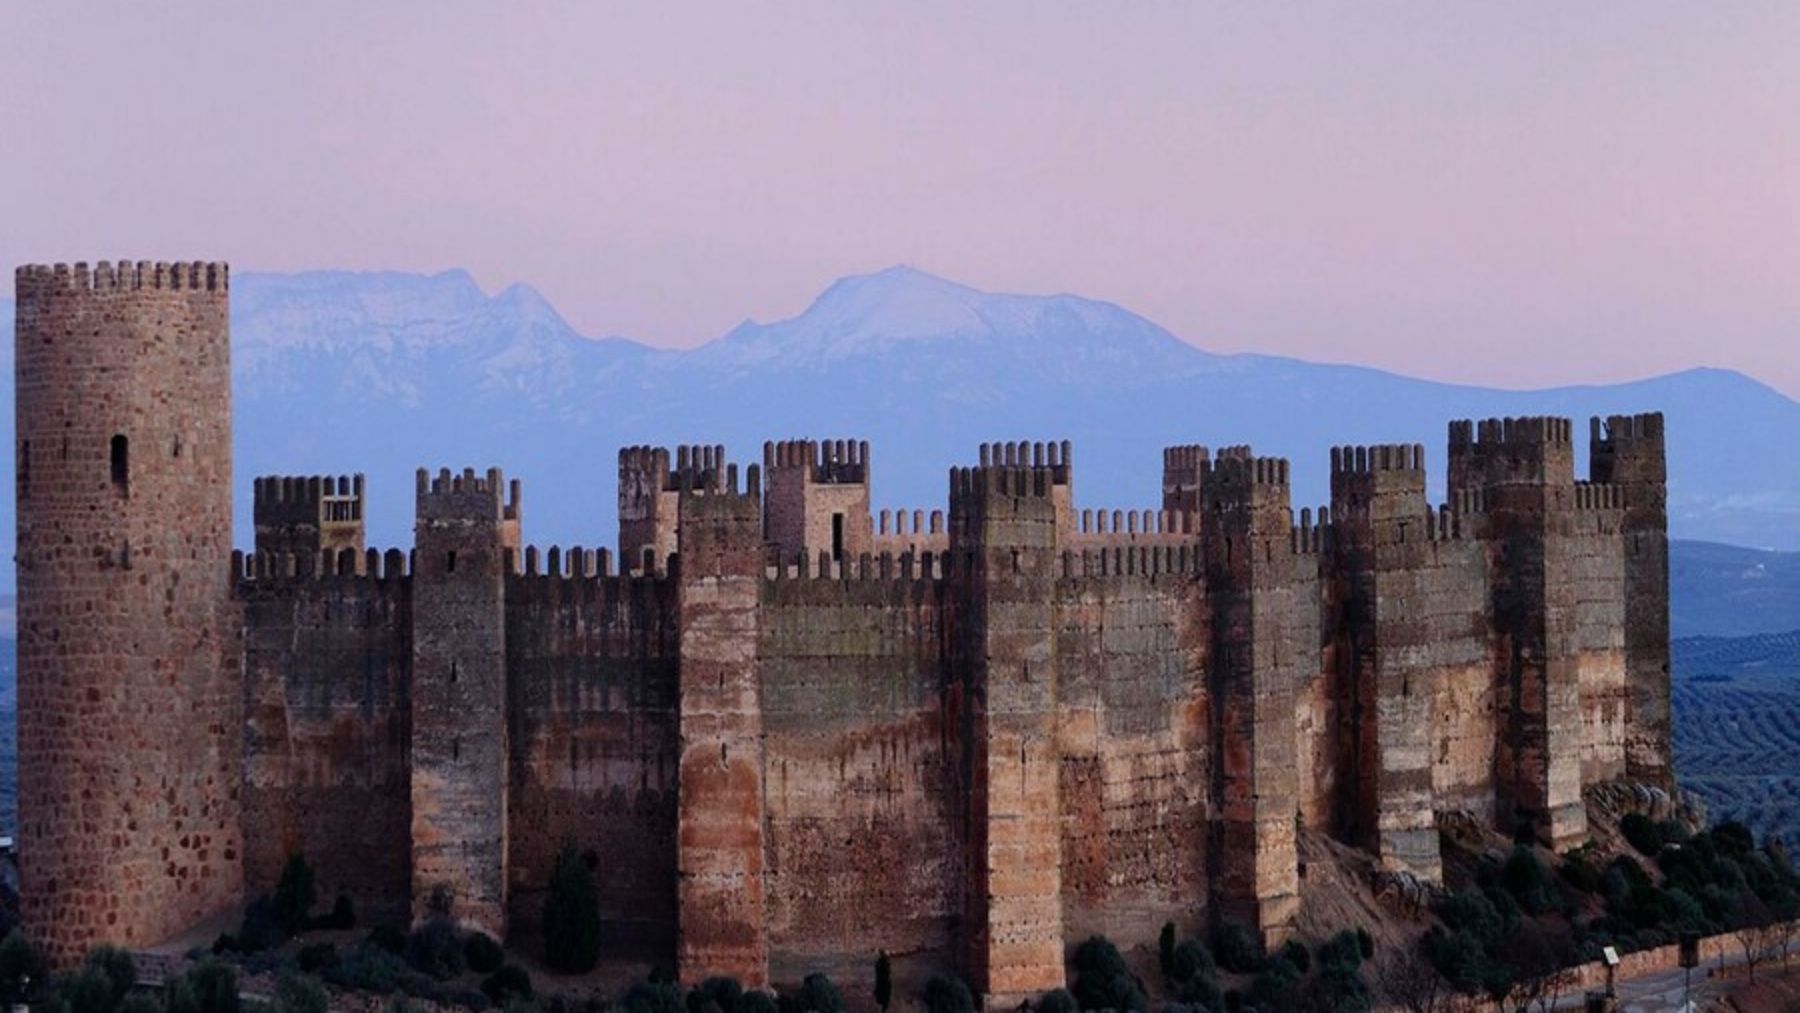 El castillo más antiguo de España que merece una visita de fin de semana